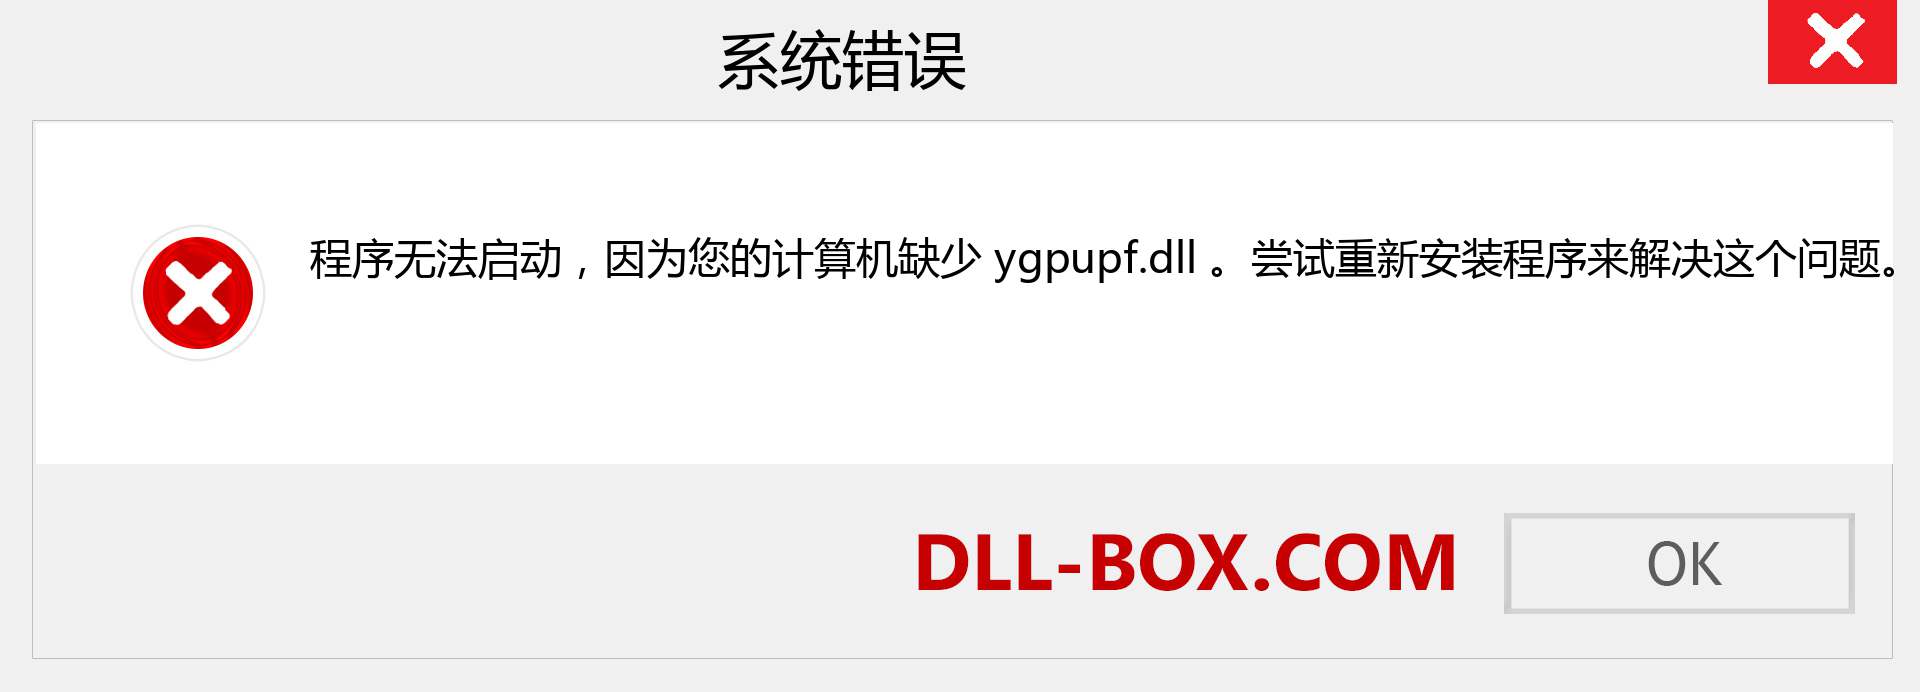 ygpupf.dll 文件丢失？。 适用于 Windows 7、8、10 的下载 - 修复 Windows、照片、图像上的 ygpupf dll 丢失错误